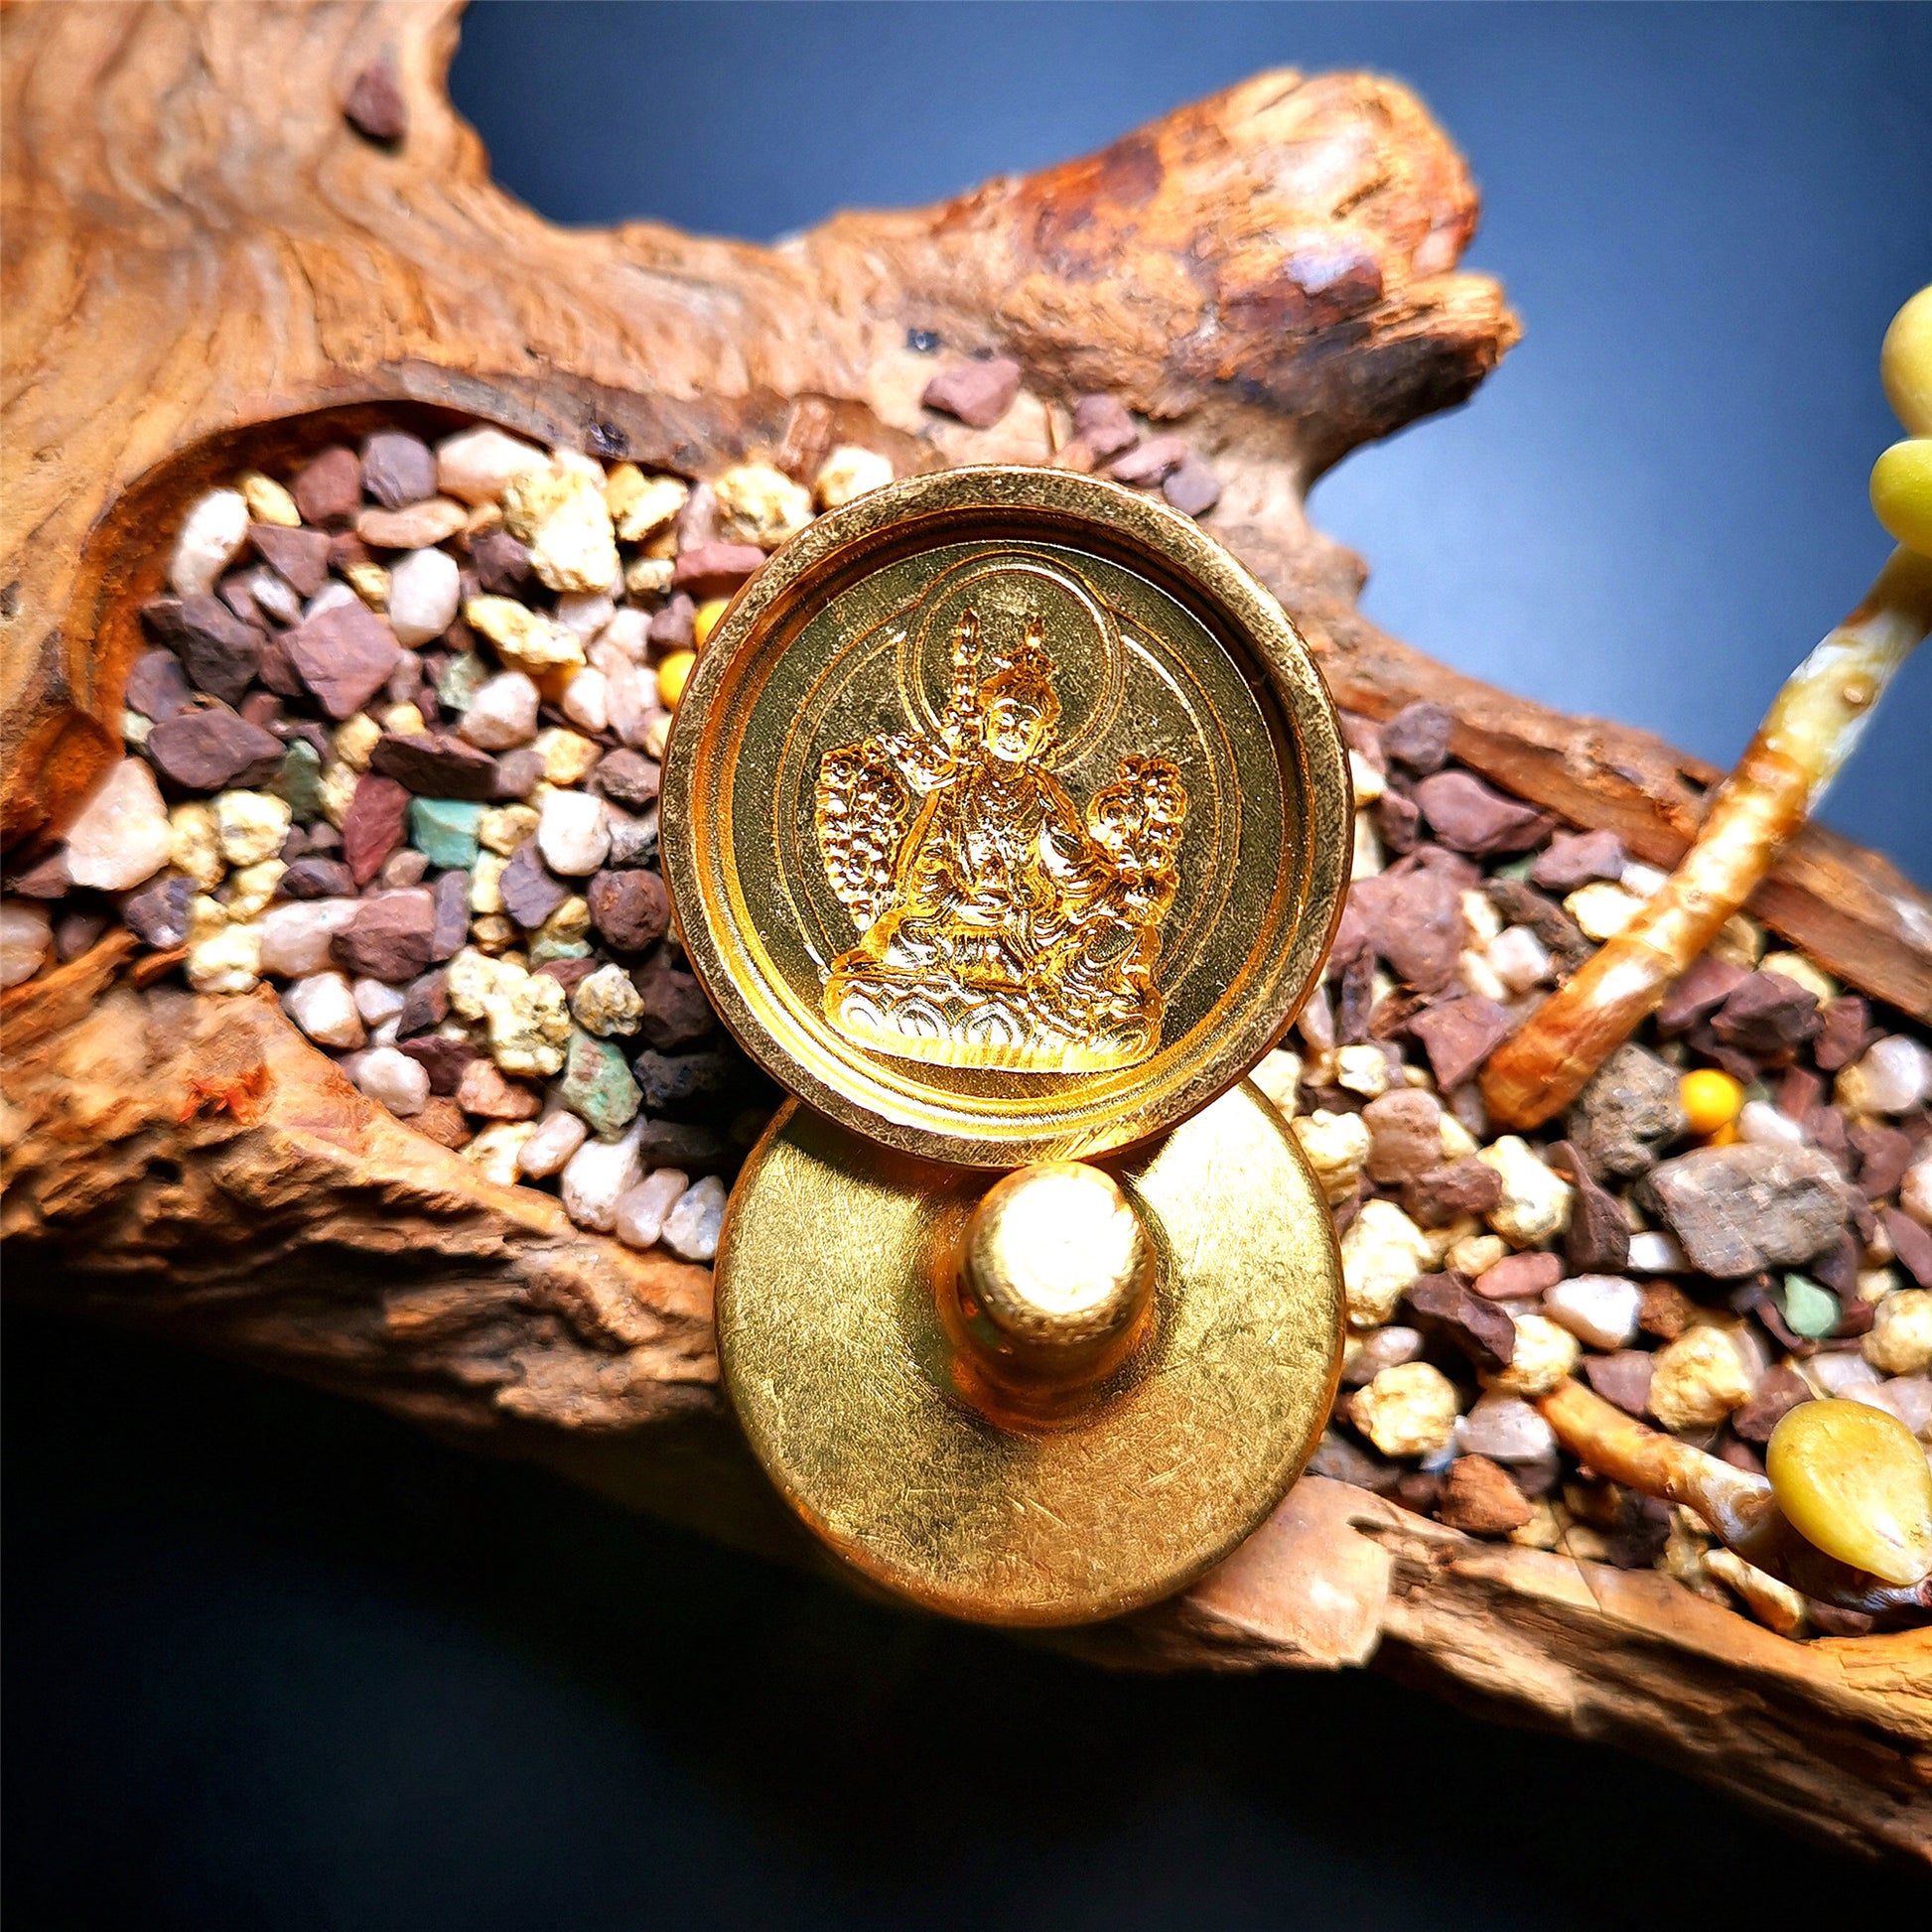 Gandhanra Handmade Small Round Tsa Tsa ,Tibetan Buddha Statue Mold-Guru Rinpoche